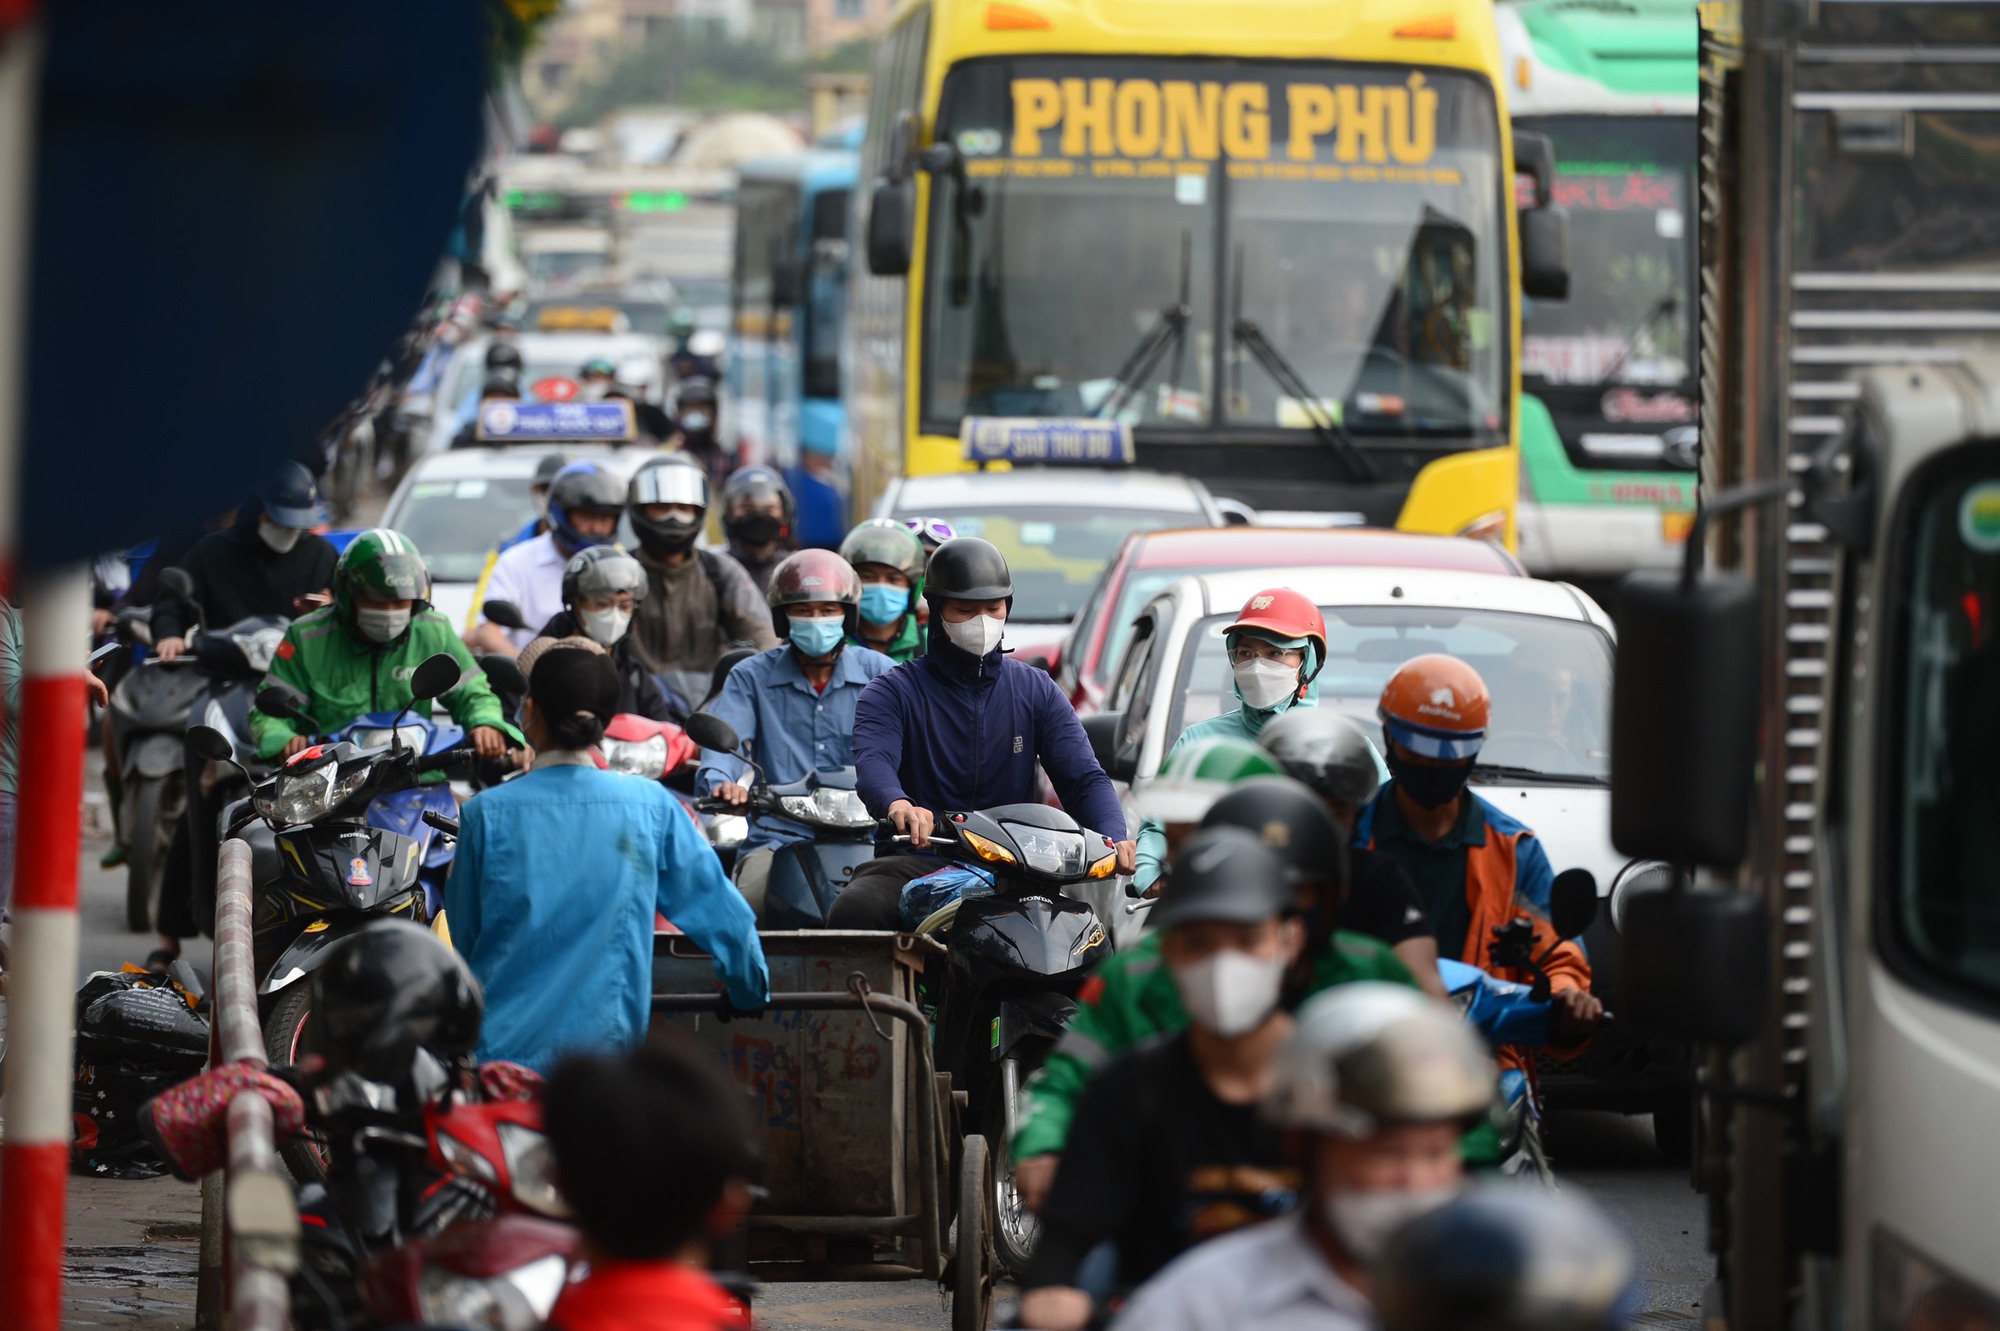 Phát sinh thêm 10 điểm ùn tắc giao thông tại Hà Nội trong 9 tháng đầu năm 2023 - Ảnh 1.